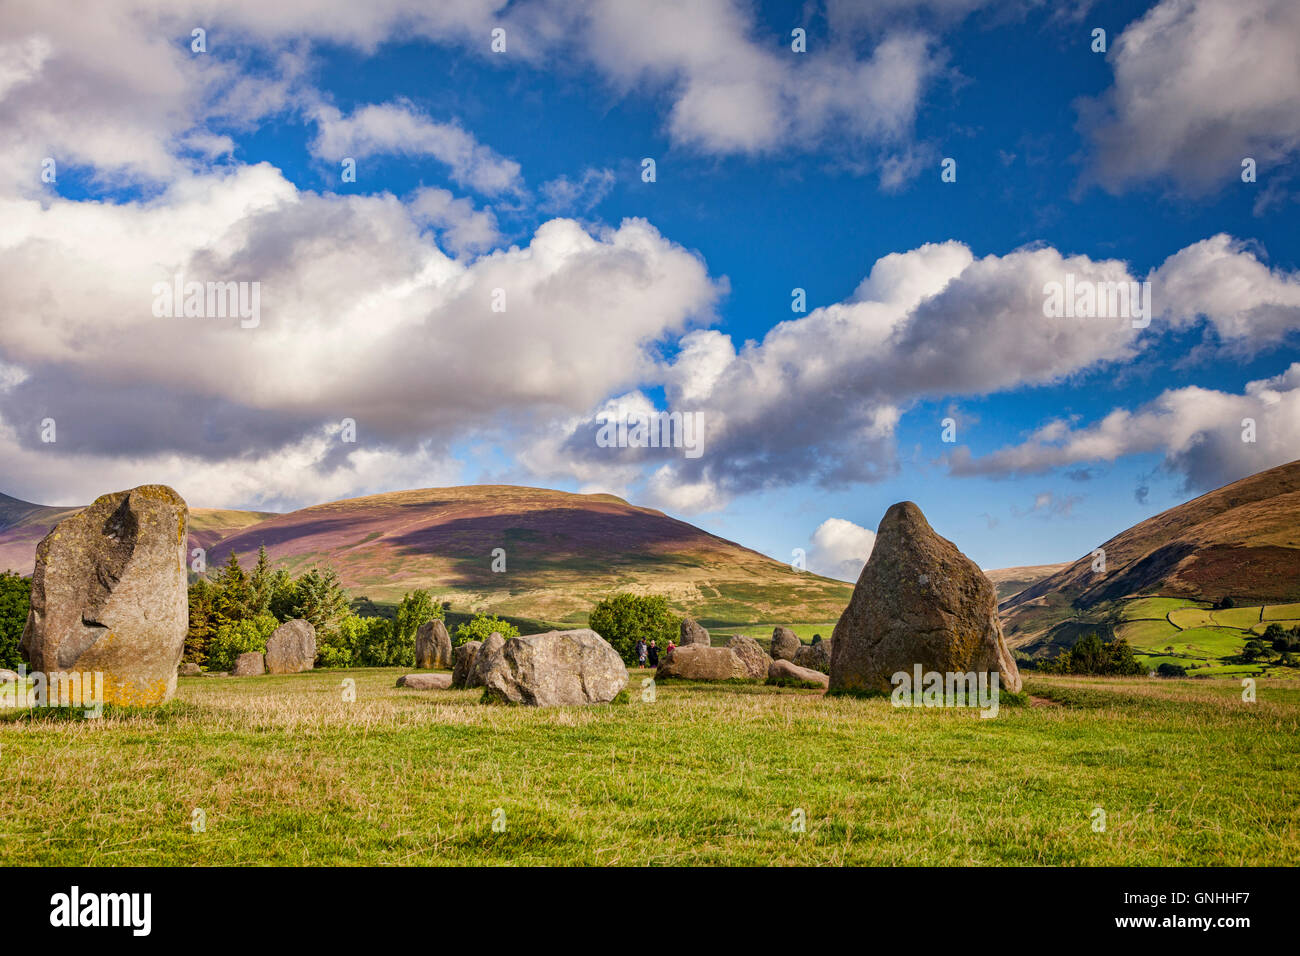 Le cercle de pierres de Castlerigg, Cumbria, England, UK Banque D'Images